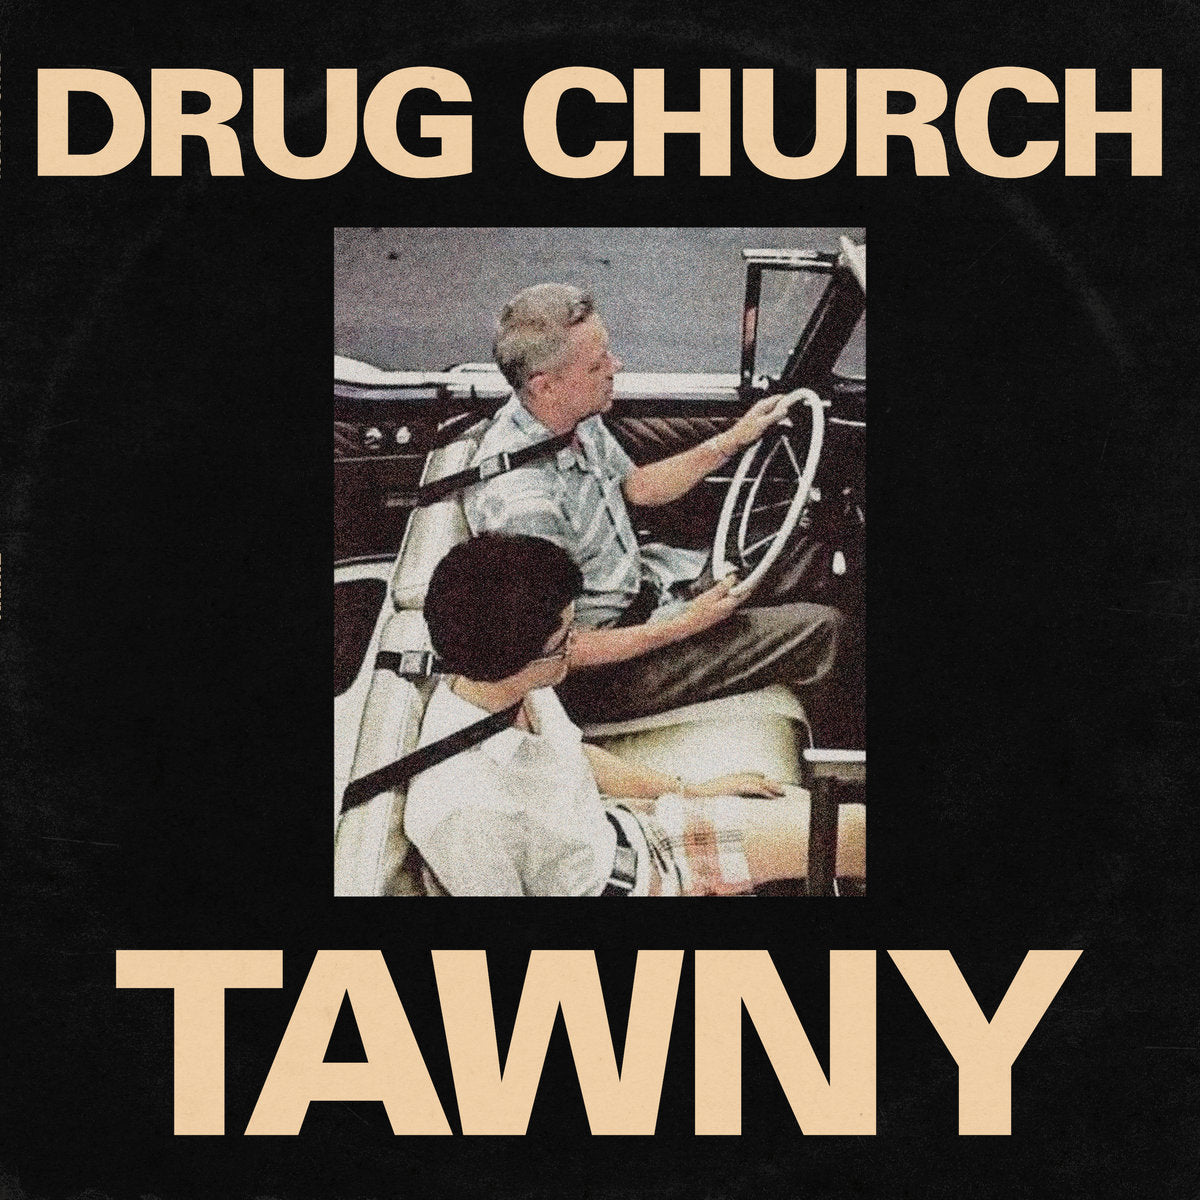 Drug Church "Tawny" 12" Vinyl